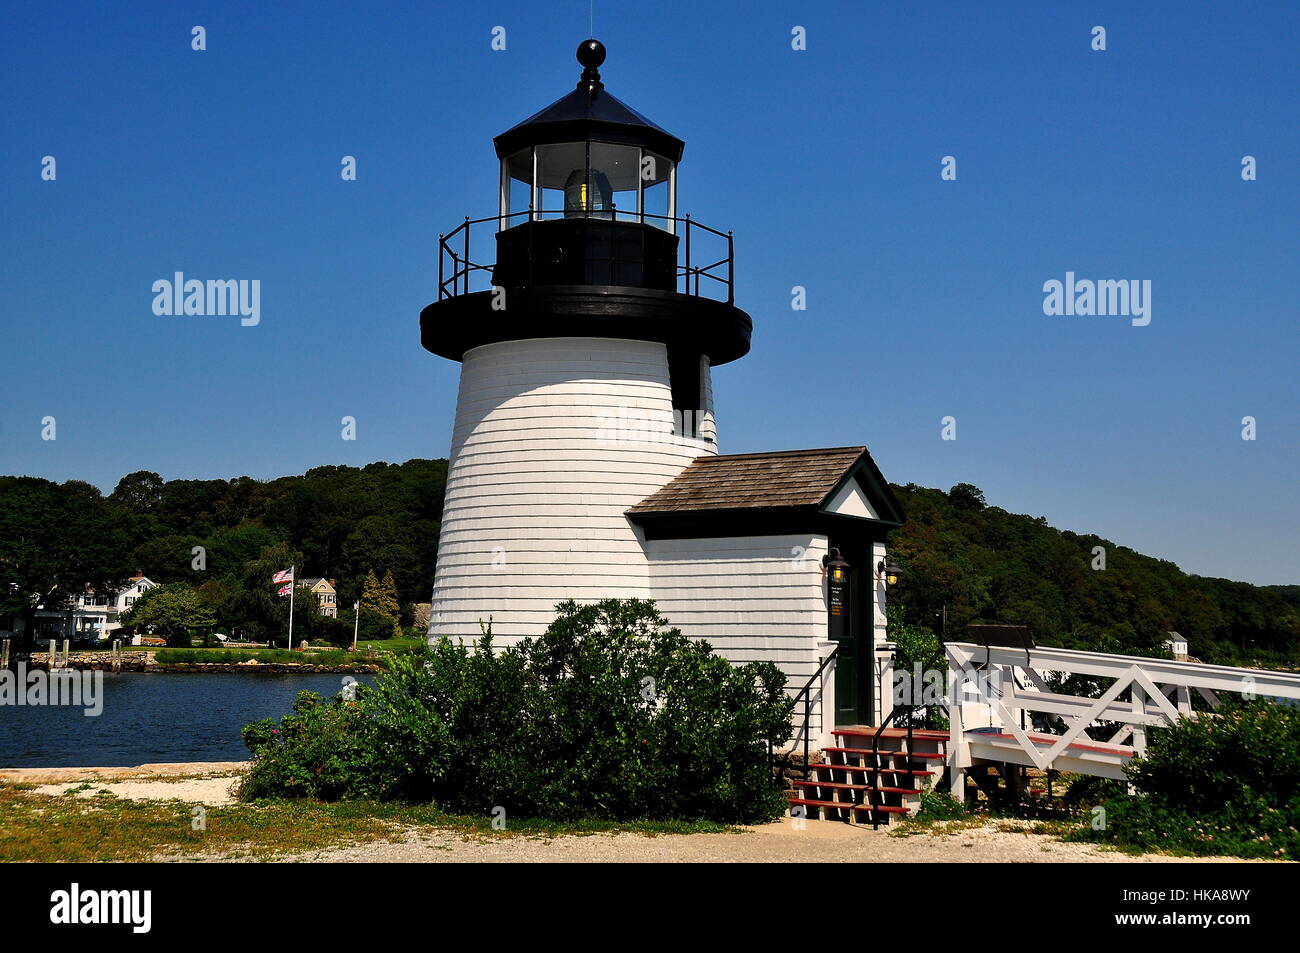 Mystic, Connecticut - Julio 11, 2015: 1966 Brant Point Lighthouse, una réplica de la original del siglo XVIII, en el faro de Nantucket Mystic Seaport Foto de stock